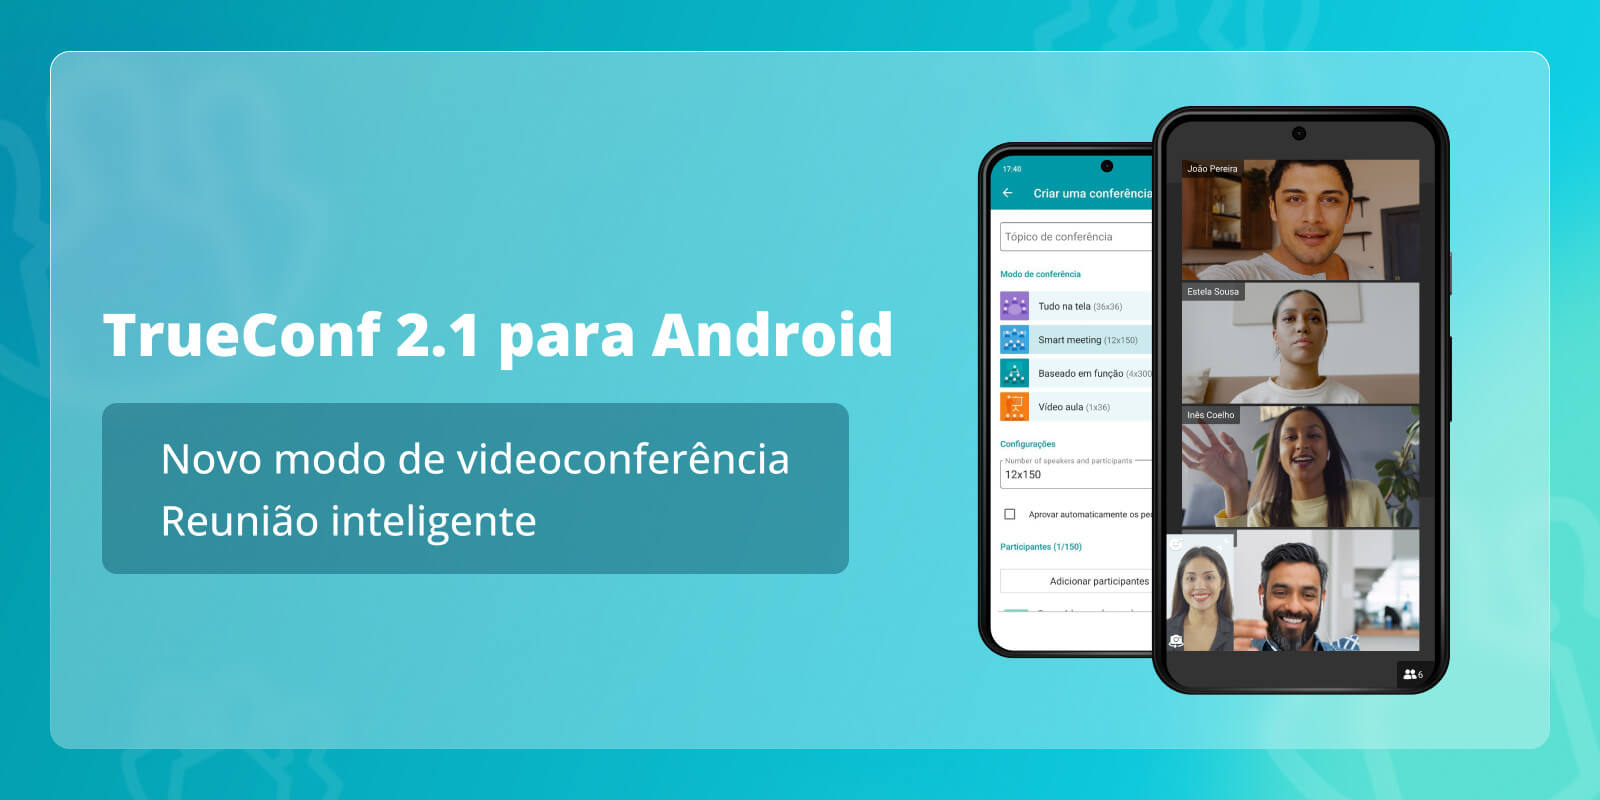 TrueConf 2.1 para Android: novo modo de videoconferência — Reunião inteligente 6